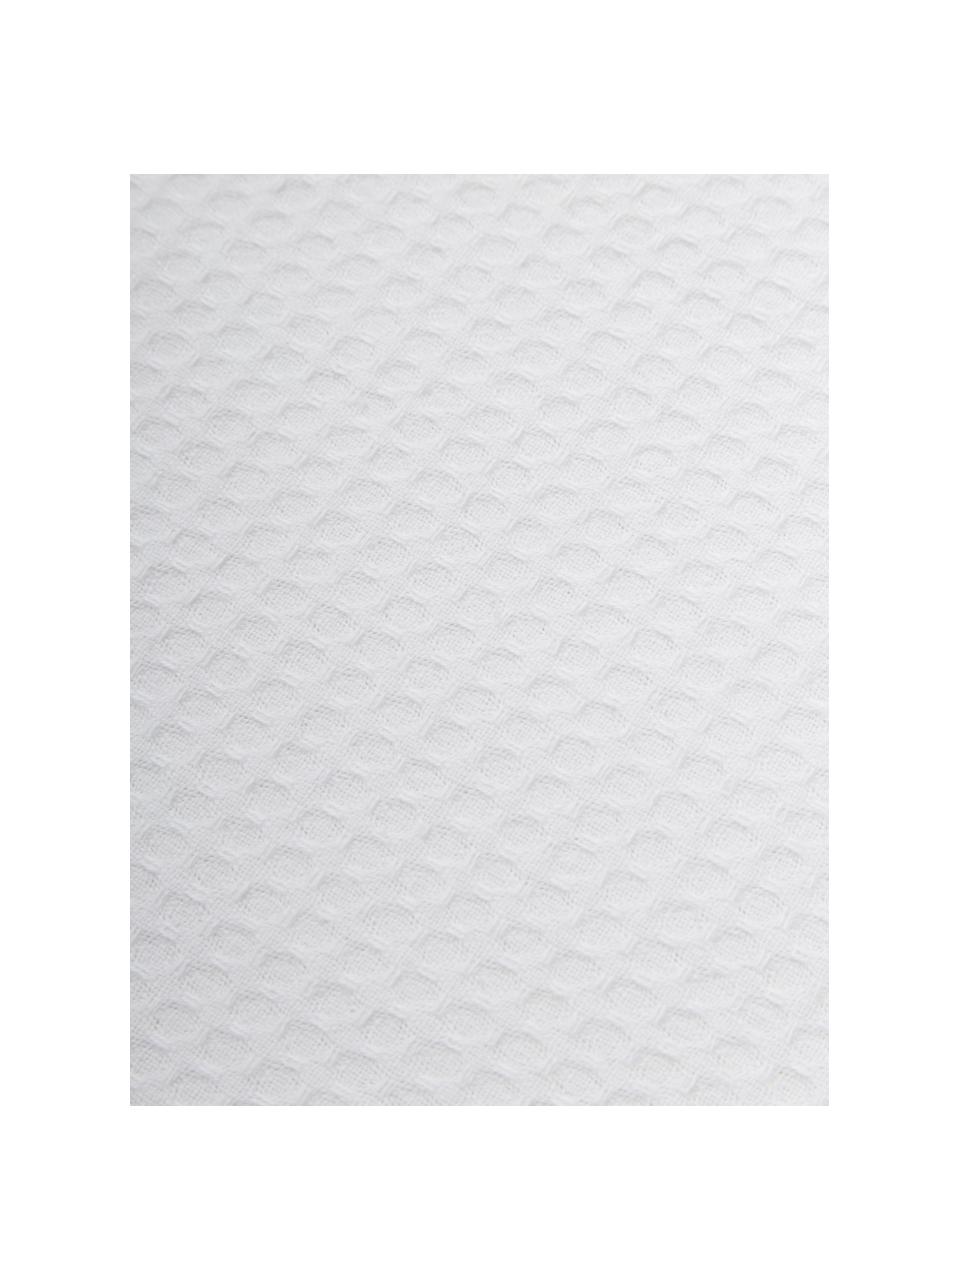 Pościel z bawełny Waffle Living, 100% bawełna
Produkt wykonany jest z bawełny, która jest przyjemnie miękka dla skóry, dobrze wchłania wilgoć i jest odpowiednia dla alergików, Biały, 155 x 220 cm